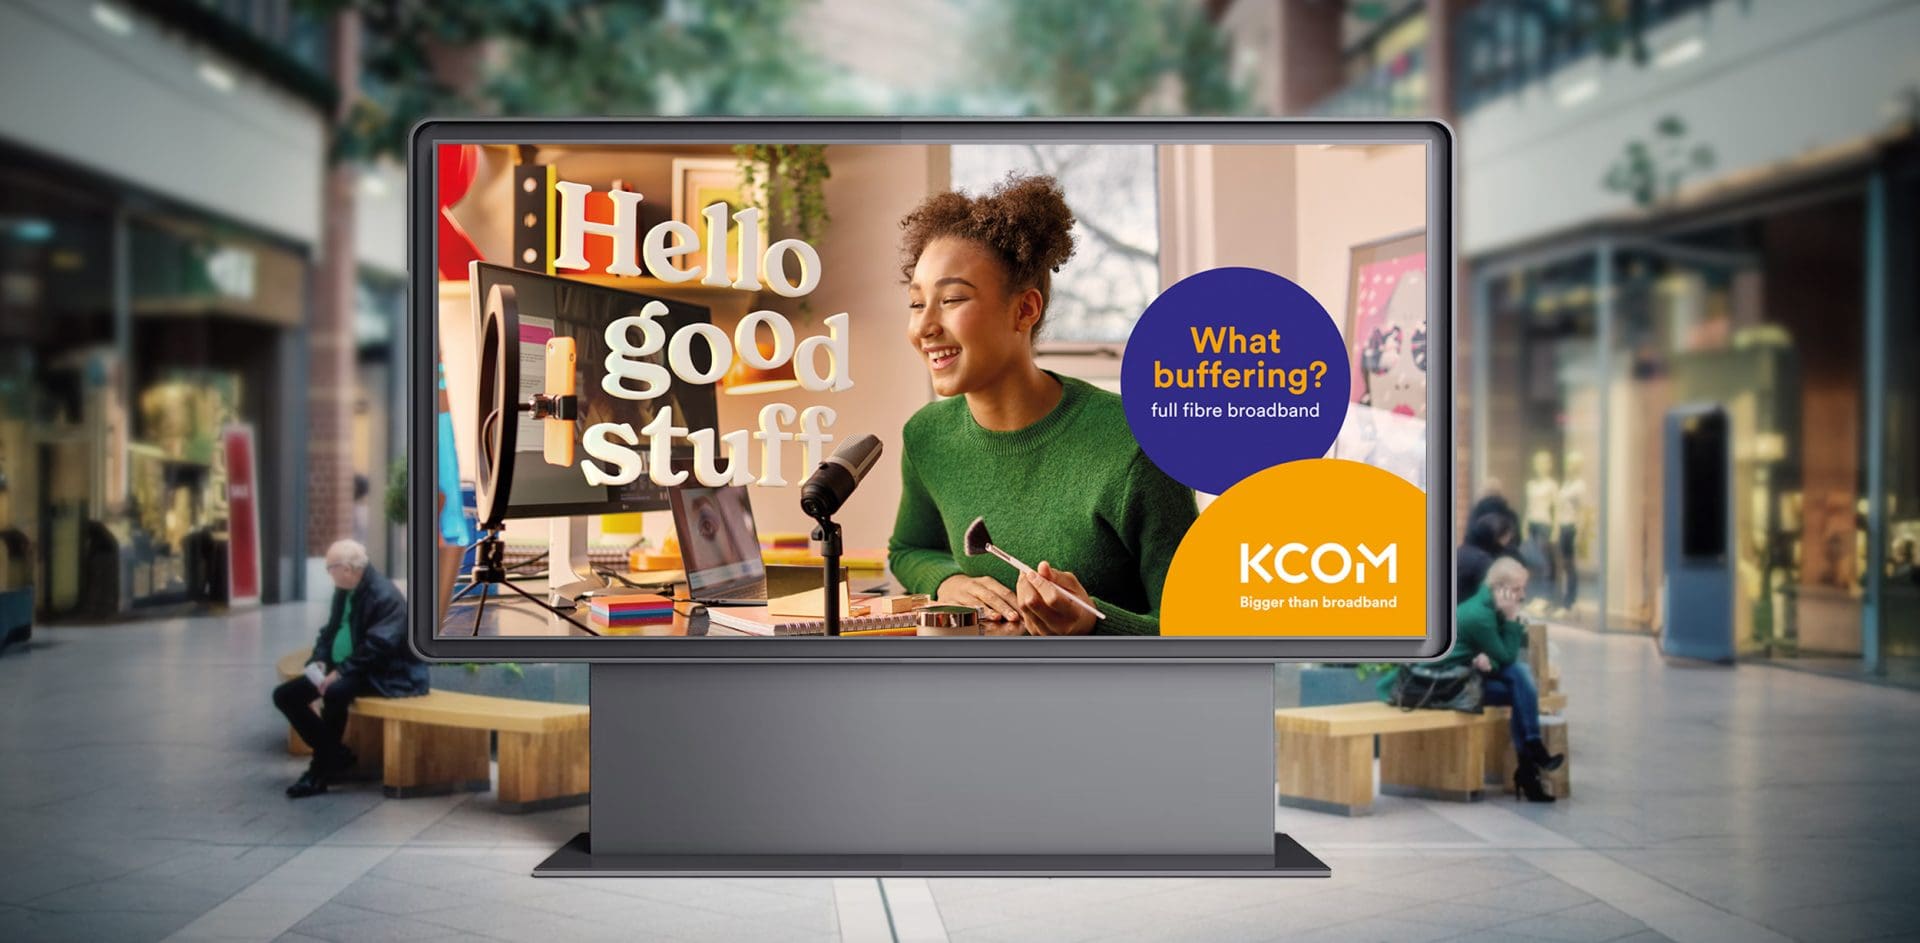 KCOM "Hello Good Stuff" billboard